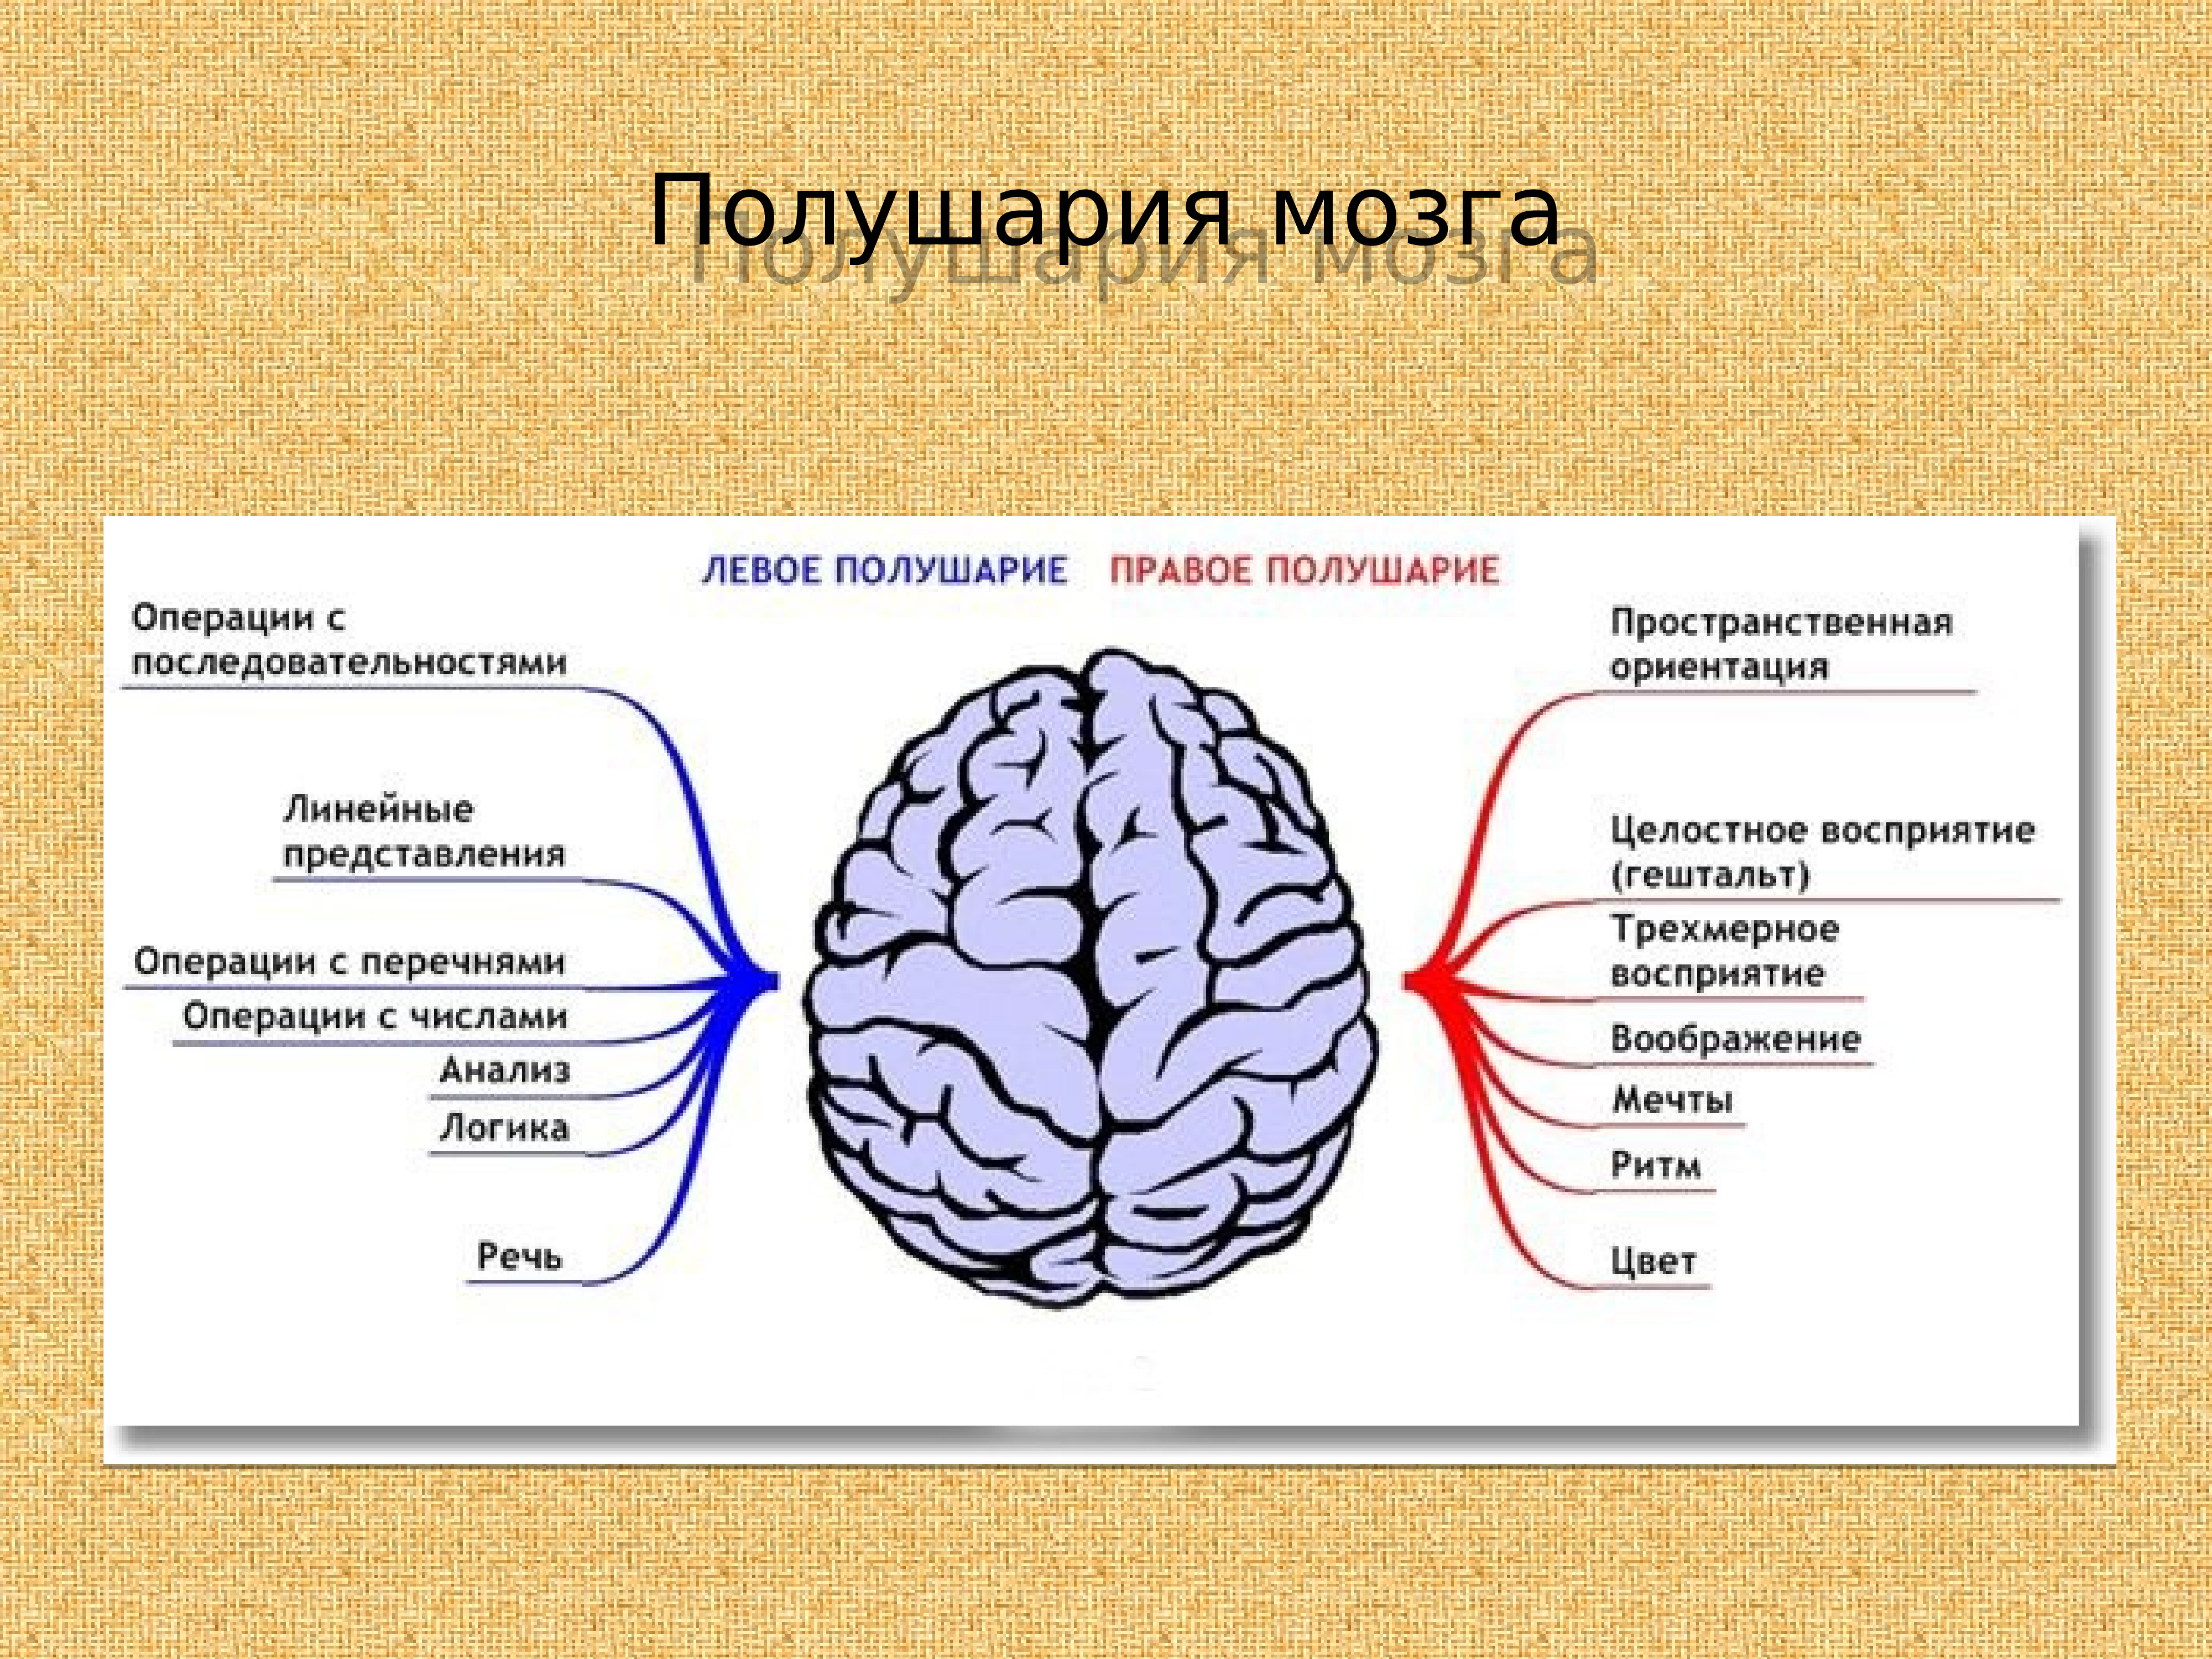 Зрение полушария мозга. Локализация психических функций в коре головного мозга. Мозговая локализация высших психических функций. Функциональная асимметрия полушарий. Функциональная асимметрия полушарий мозга.